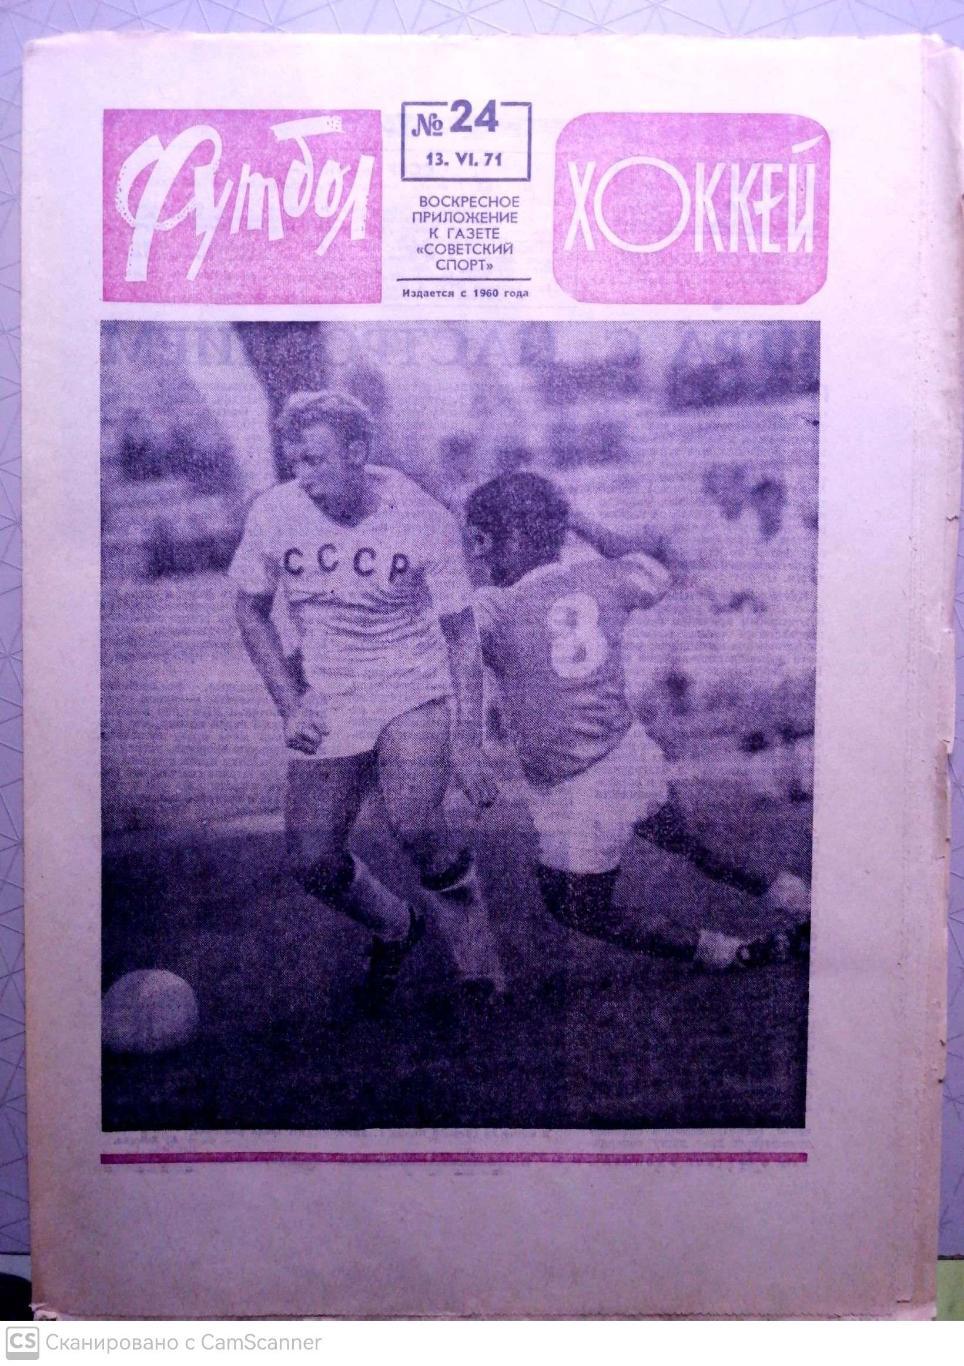 Еженедельник «Футбол-Хоккей». 1971 год. №24 ссср-кипр